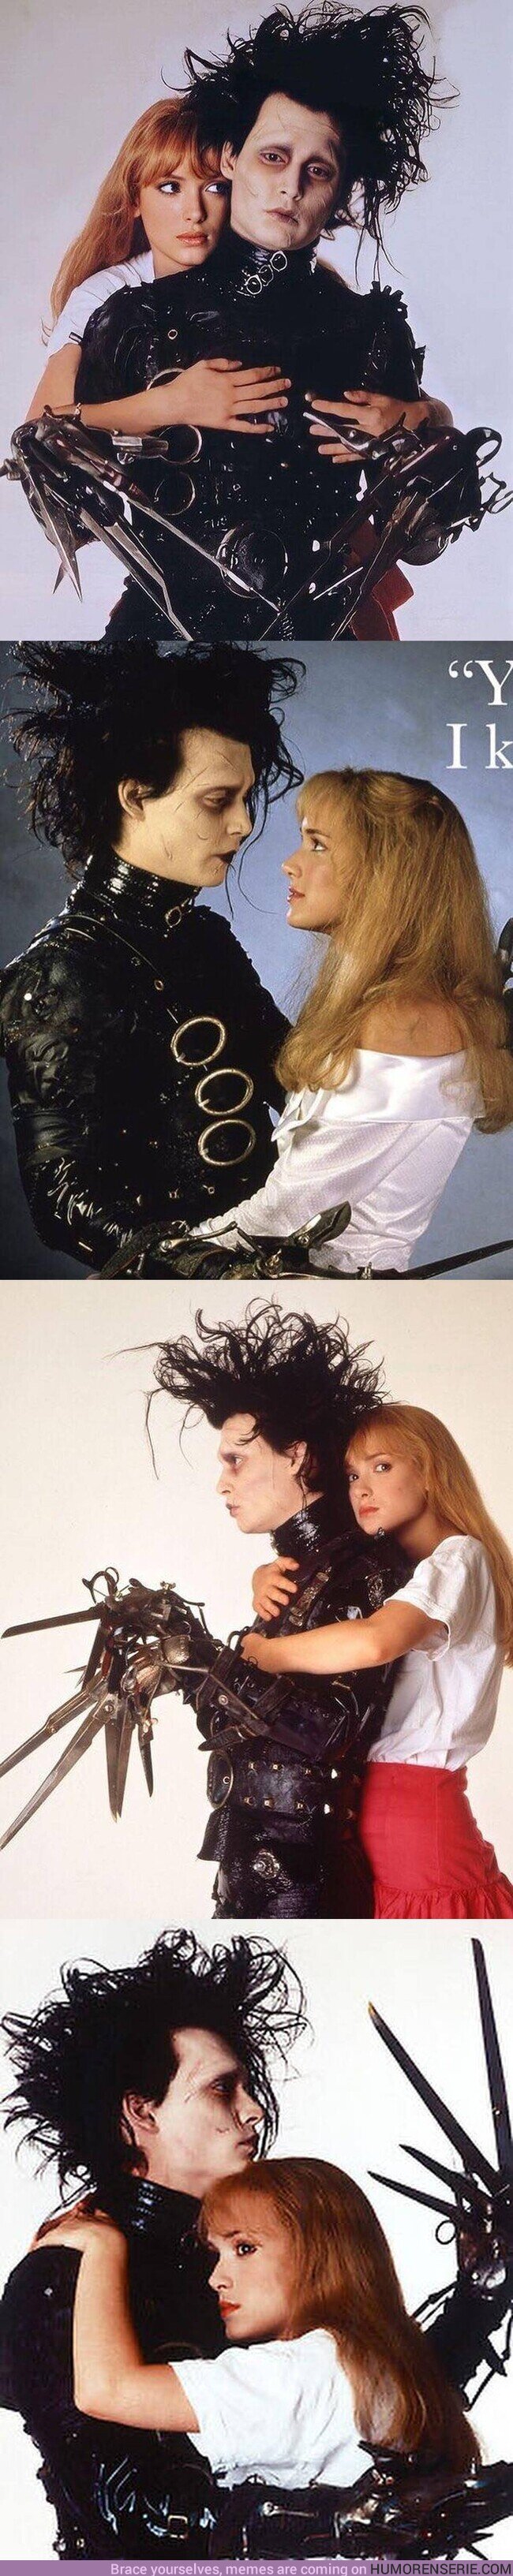 140176 - Winona Ryder y Johnny Depp para 'Eduardo Manostijeras' en 1990, mítica película